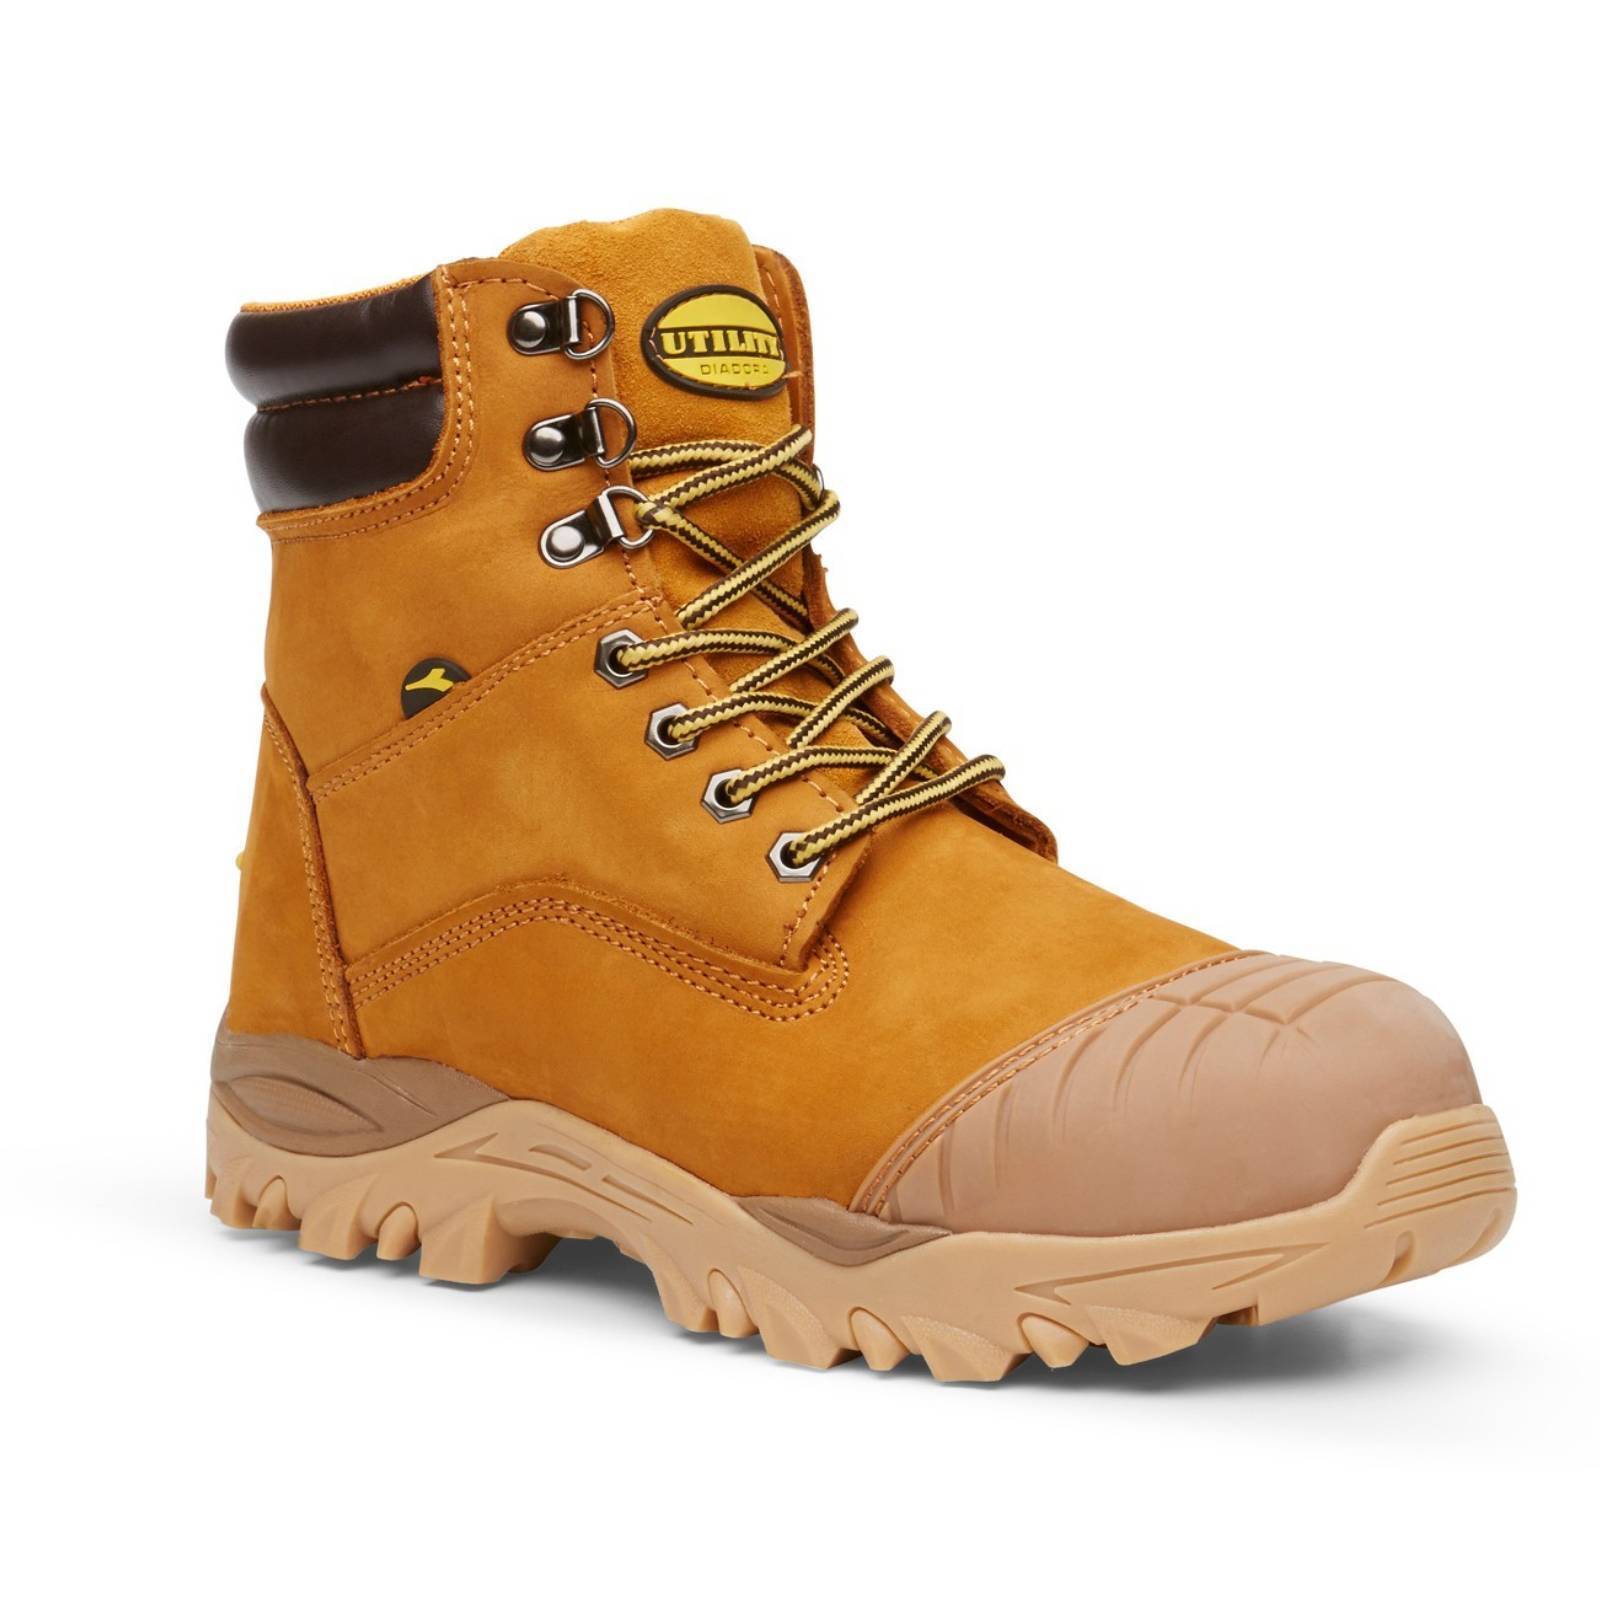 utility diadora boots